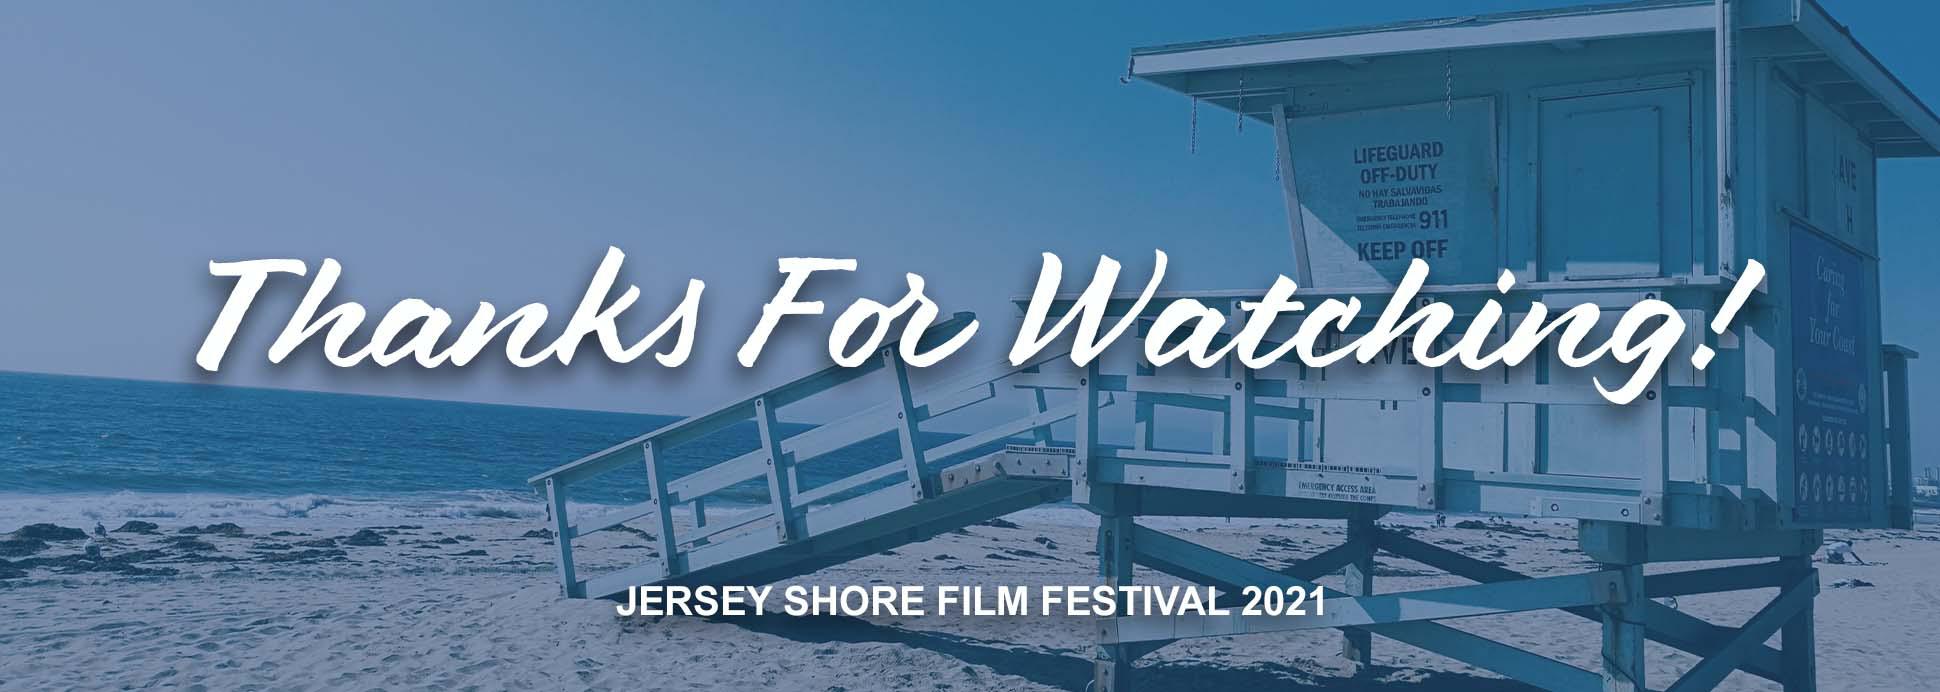 Jersey Shore Film Festival 2021